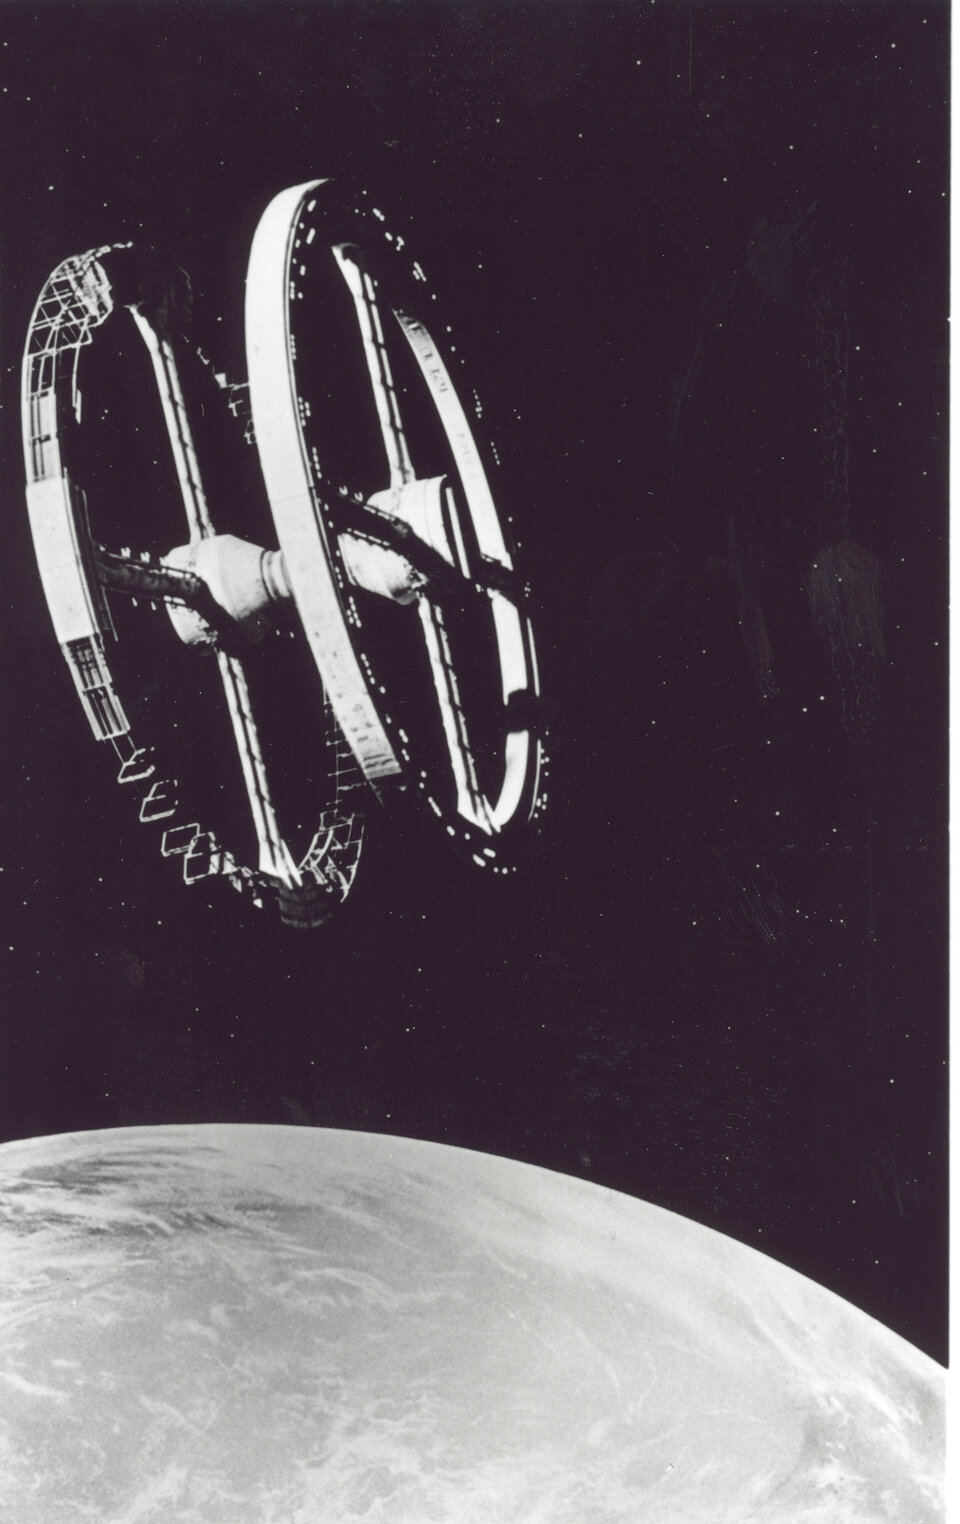 Die Raumstation aus dem Film "2001: Odyssee im Weltraum"